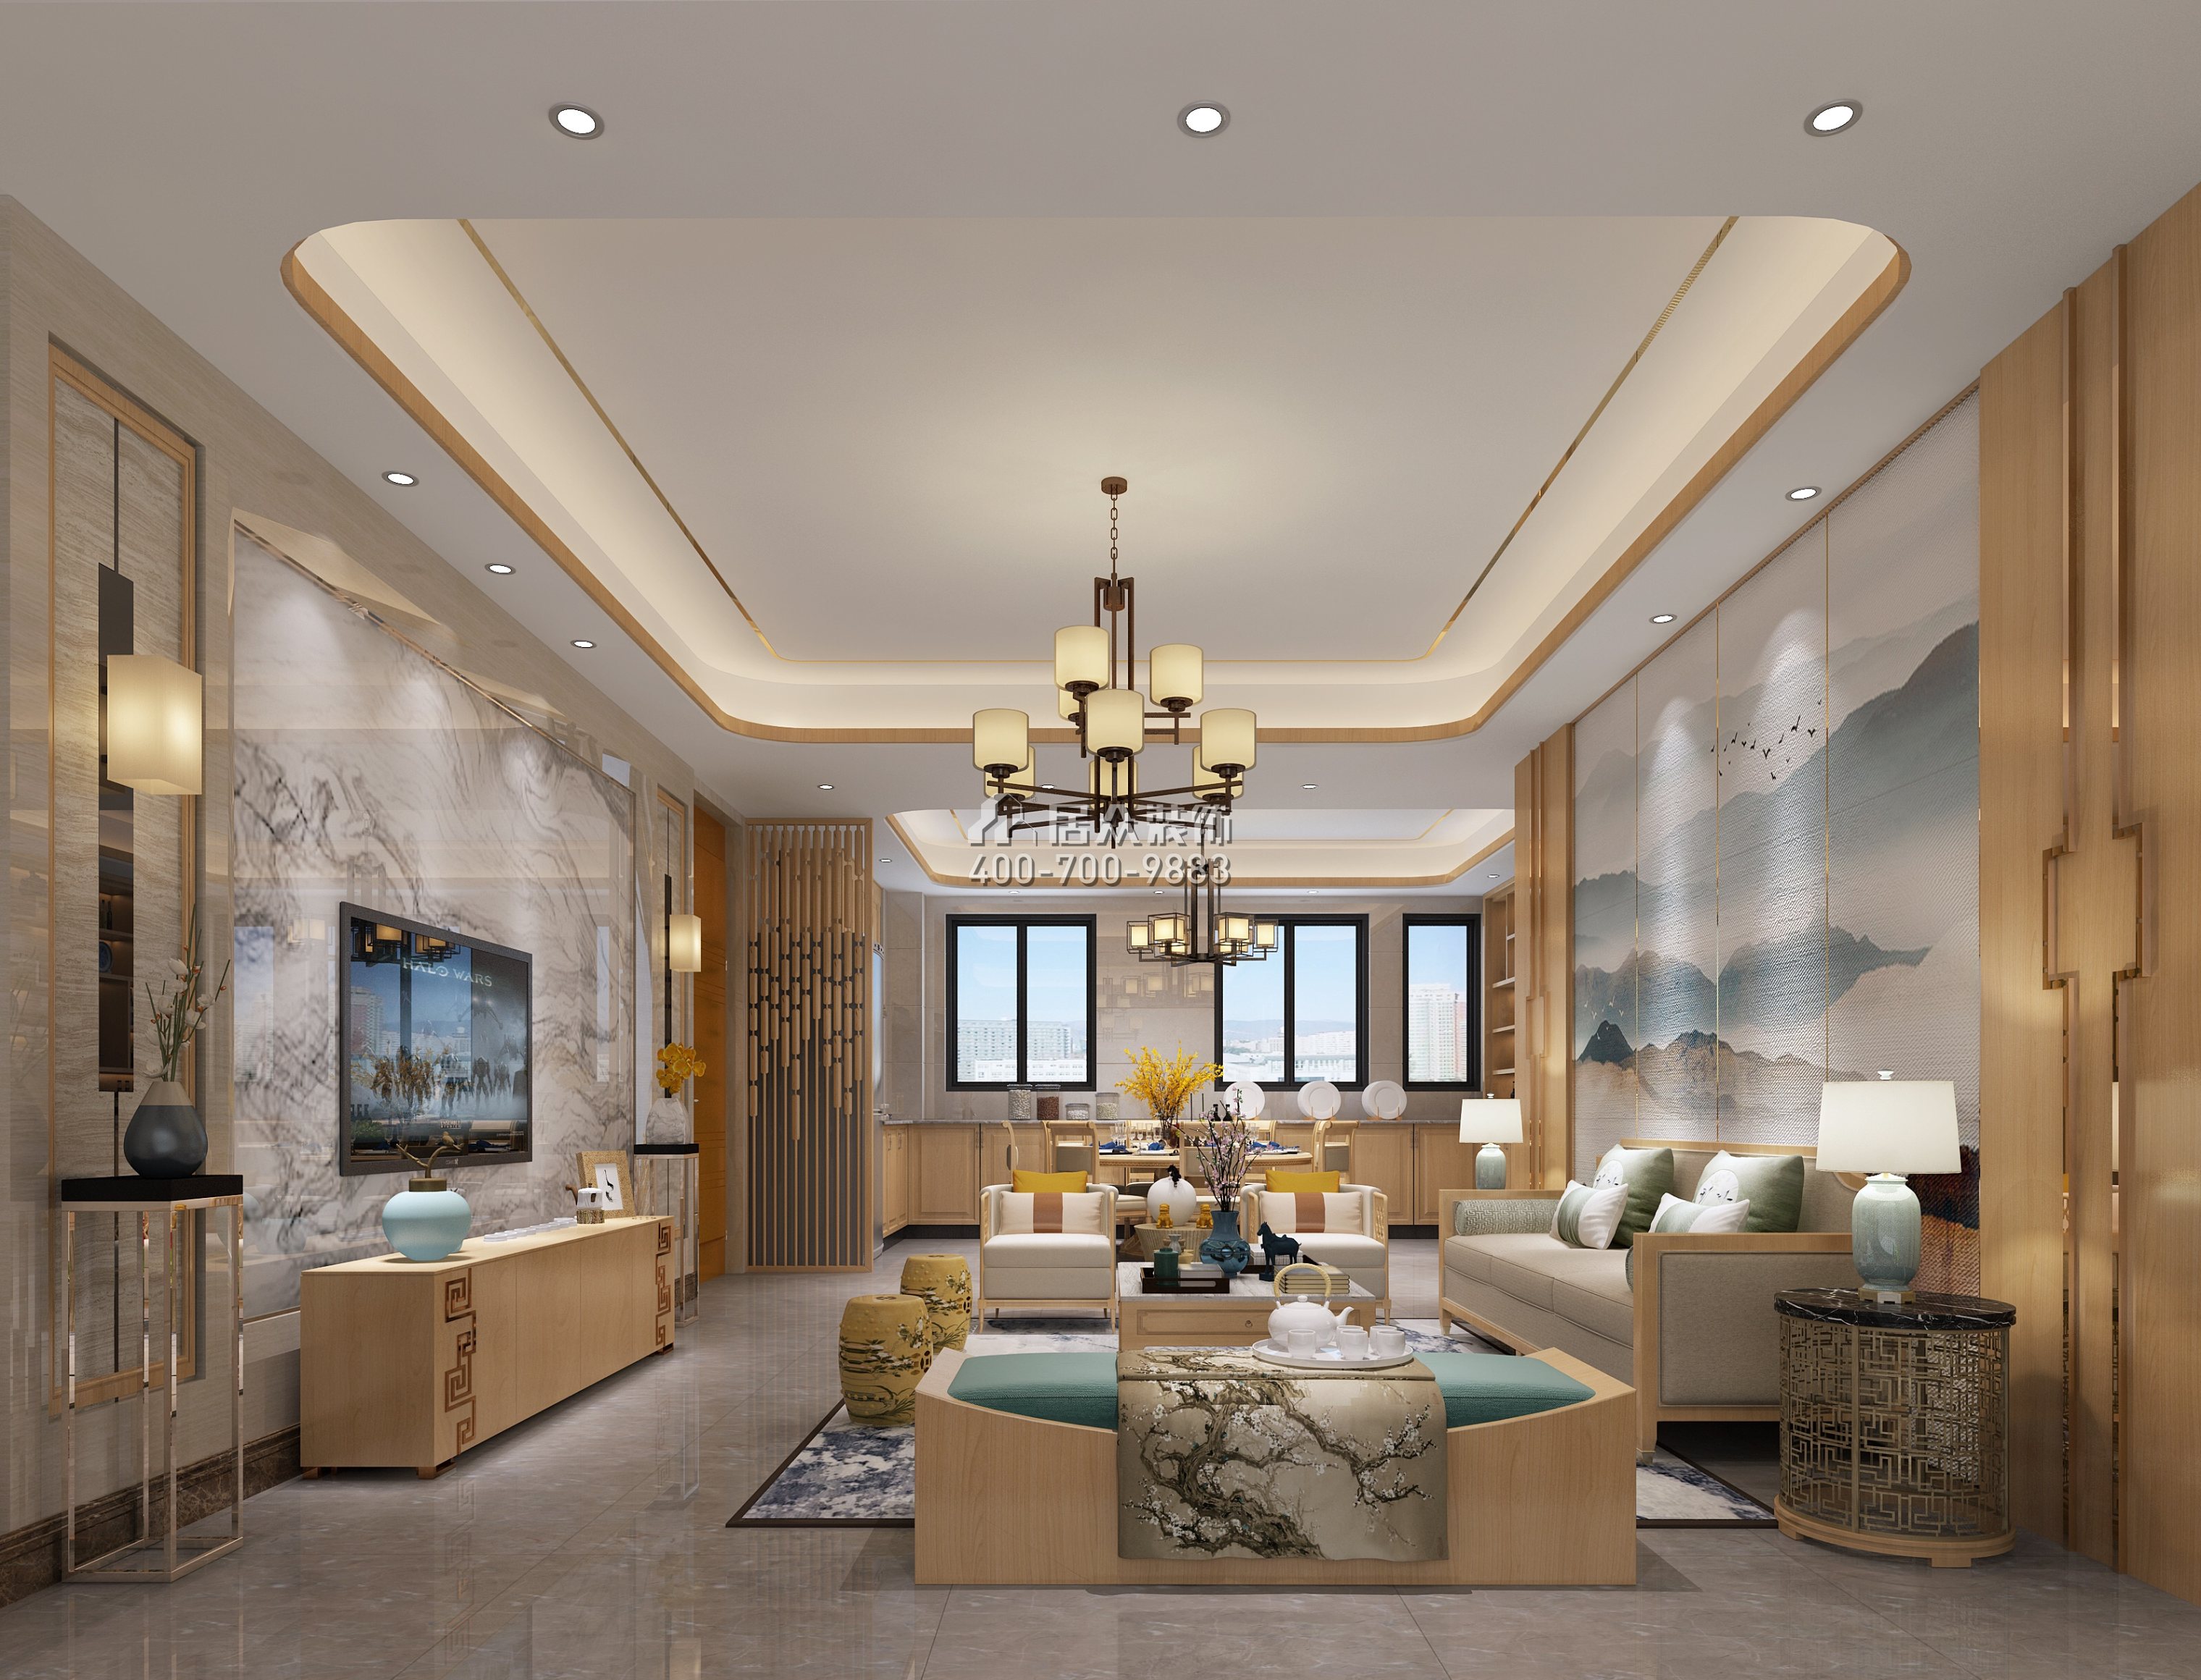 御花苑天珑湾126平方米中式风格平层户型客厅装修效果图